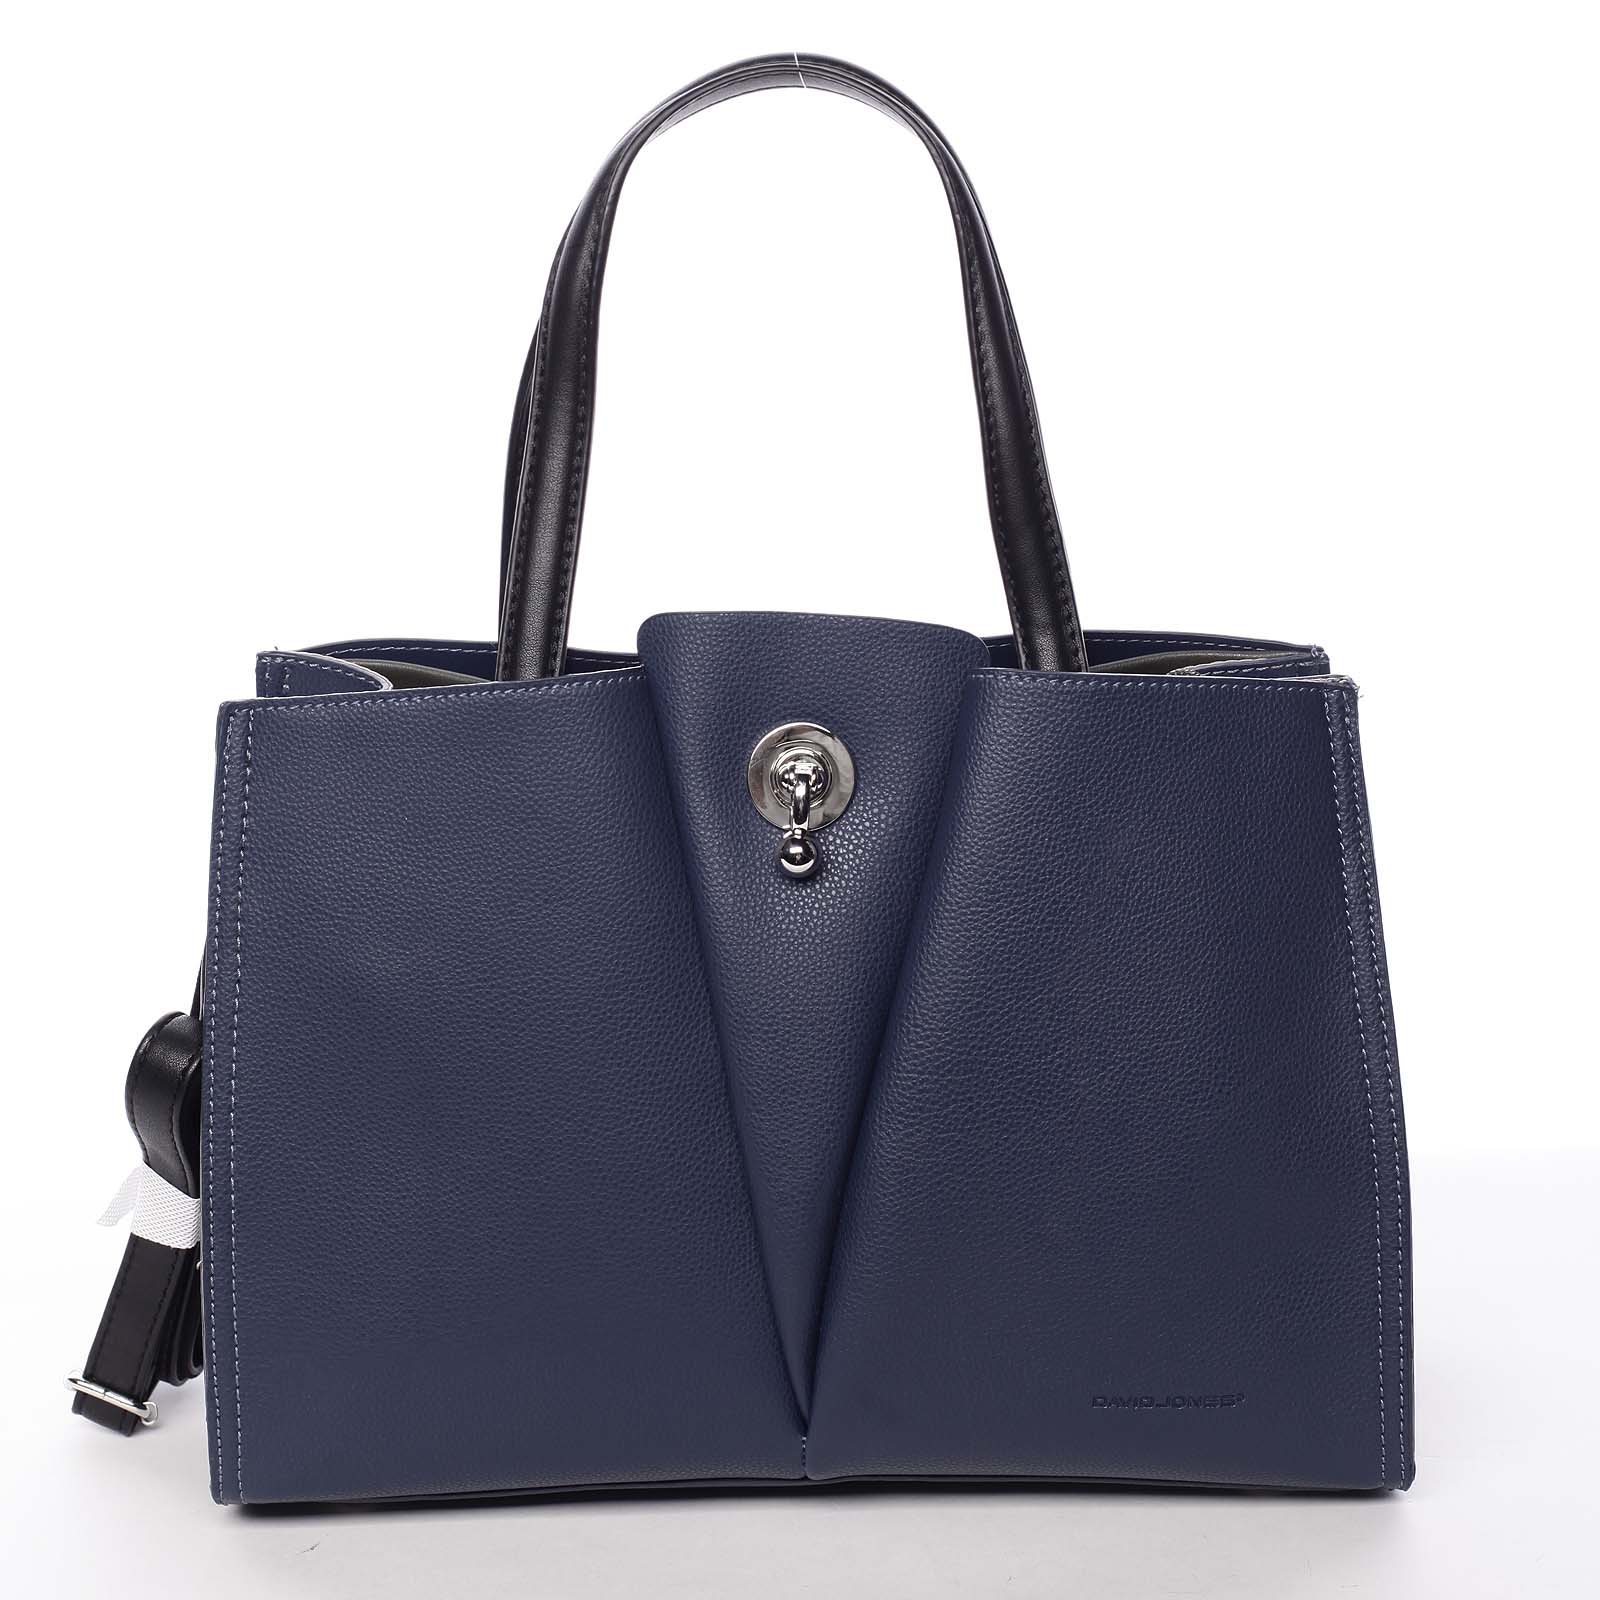 Luxusní dámská tmavě modrá kabelka do ruky - David Jones Aedon